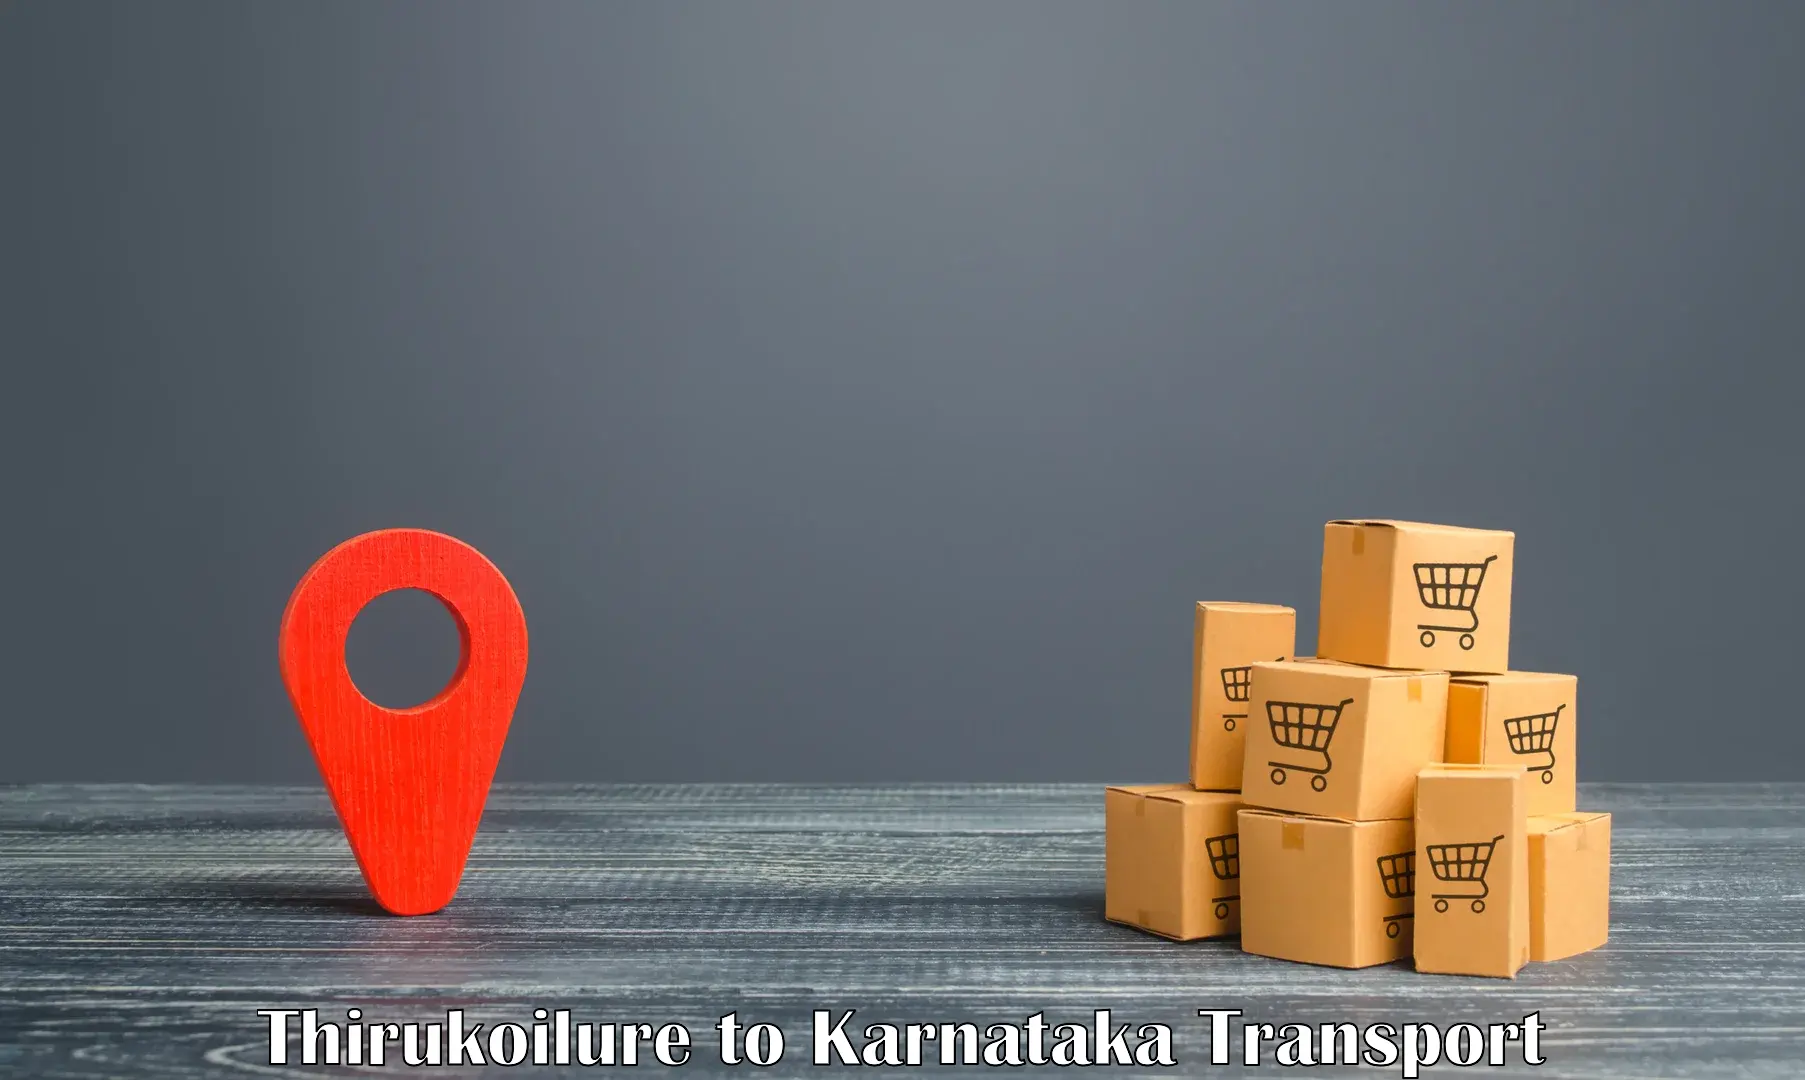 All India transport service Thirukoilure to Chikkanayakanahalli